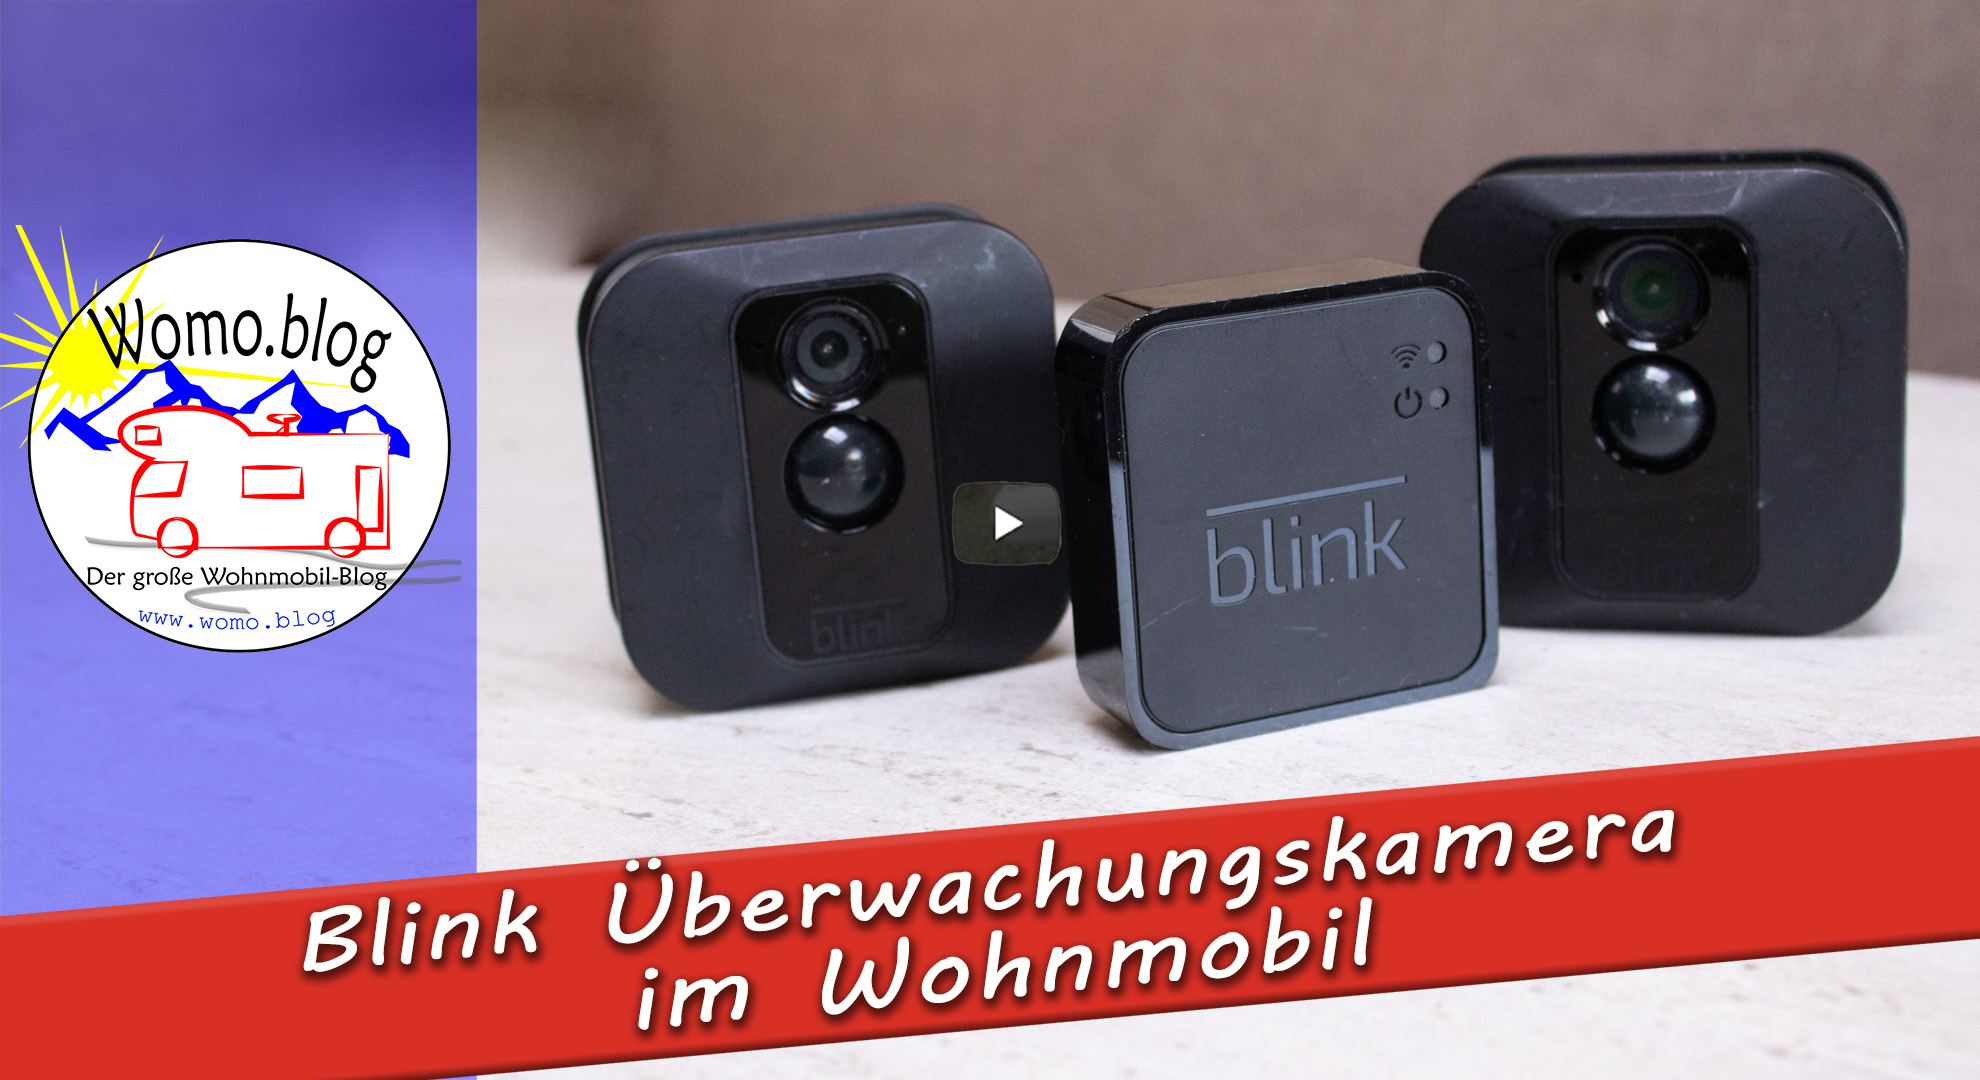 Blink Überwachungskamera im Wohnmobil?